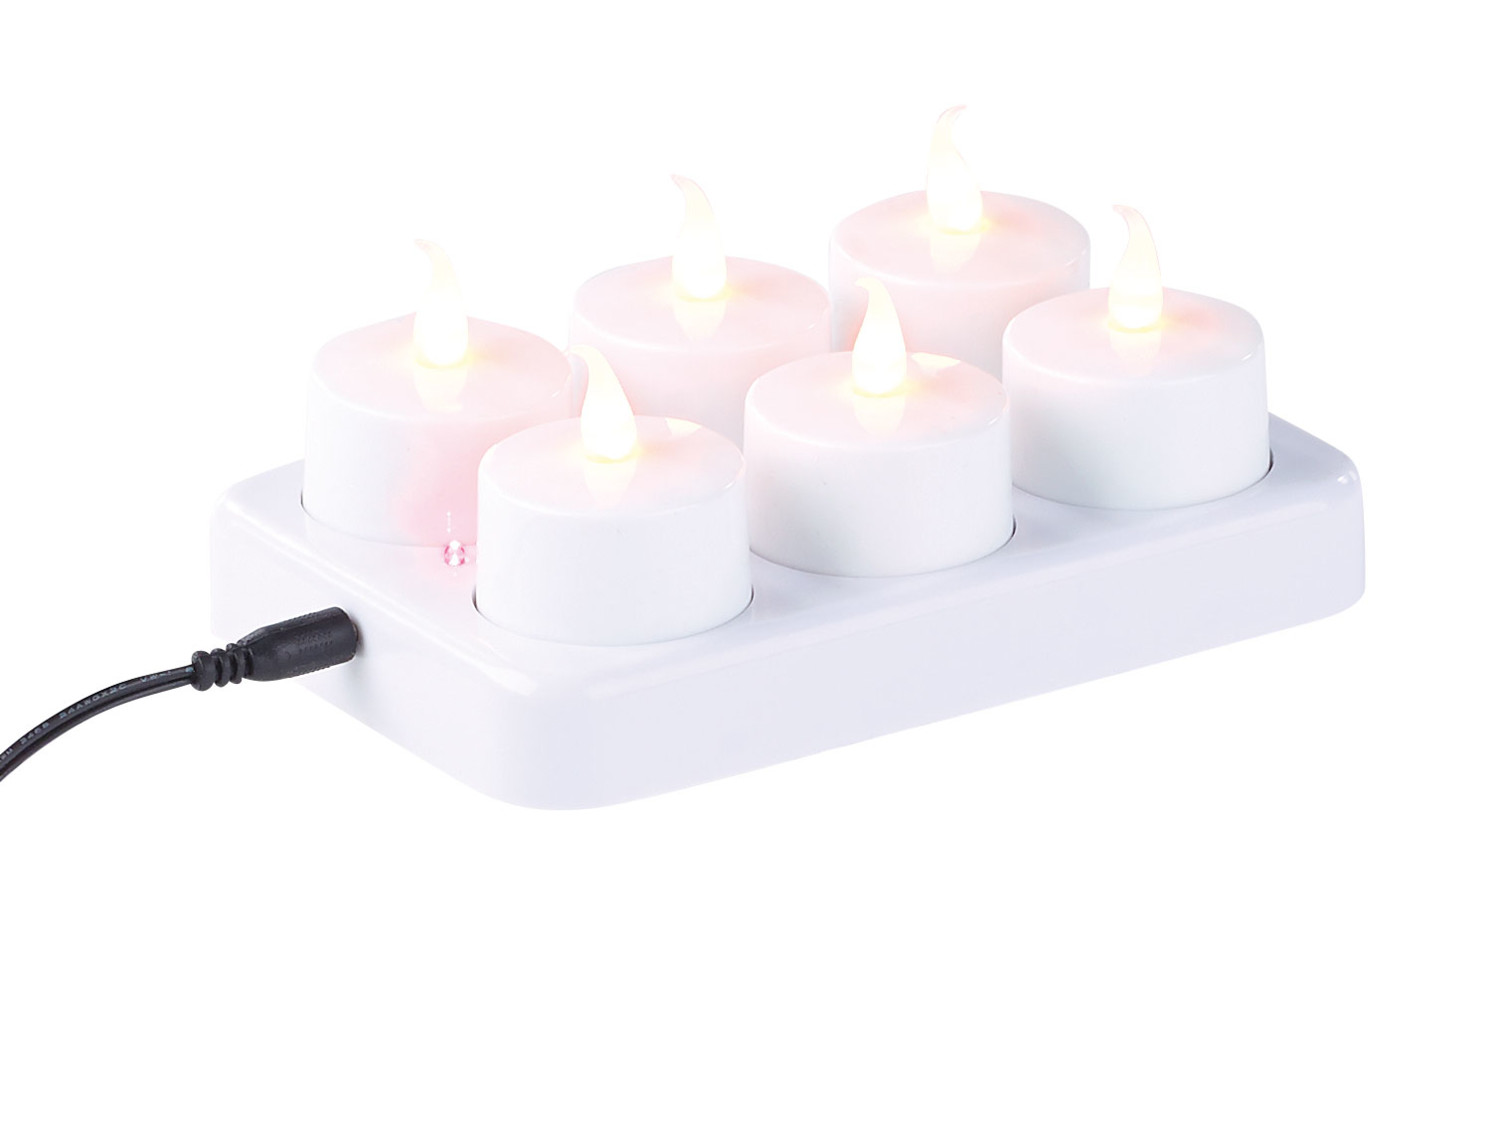 30x Bougies LED électriques Lumière scintillante Blanc chaud avec